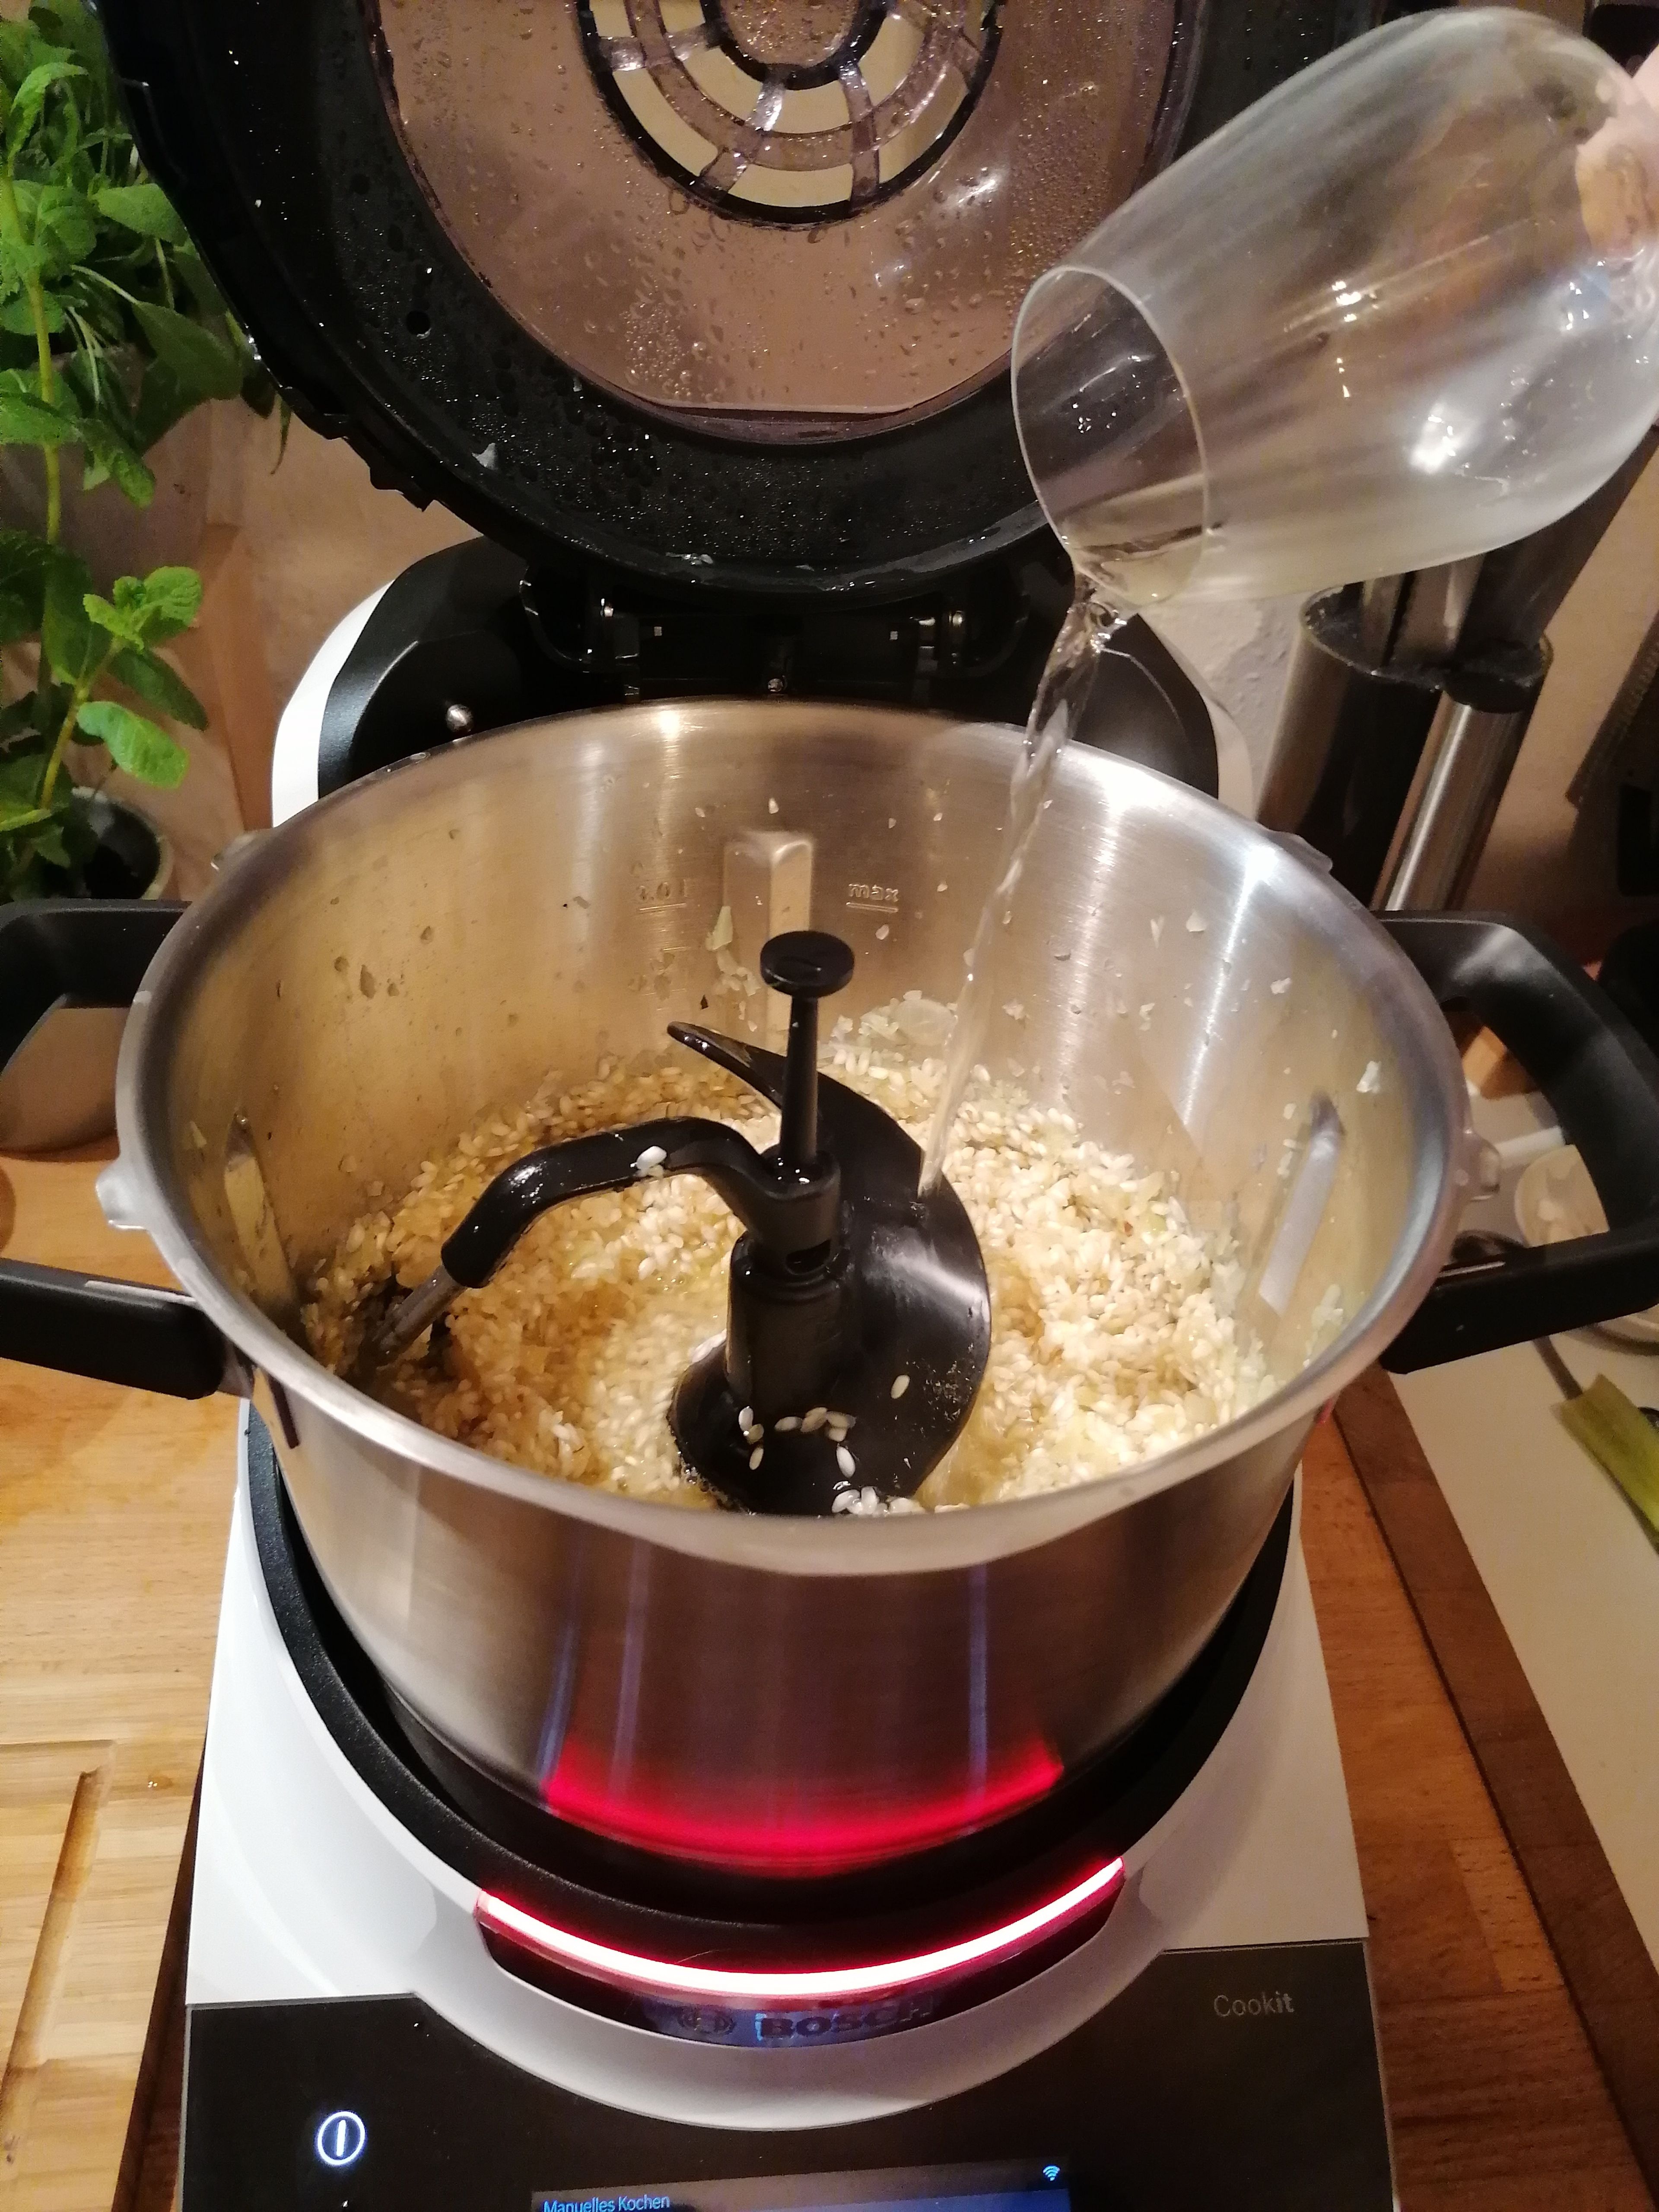 Das Universalmesser herausnehmen und den 3D-Rührer einsetzen. Die Butter in den Topf geben und das zerkleinerte Gemüse andünsten (3D-Rührer | Stufe 2 | 130°C | 2 Minuten). Den Risottoreis dazu geben und für weitere 4 Minuten andünsten. Mit dem Weißwein ablöschen und die Brühe dazugeben. Den Deckel mit dem Messbecher schließen und den Reis garen (3D-Rührer | Stufe 2 | 96°C | 10 Minuten). Die restliche Brühe hinzugeben und für weitere 10 Minuten garen.